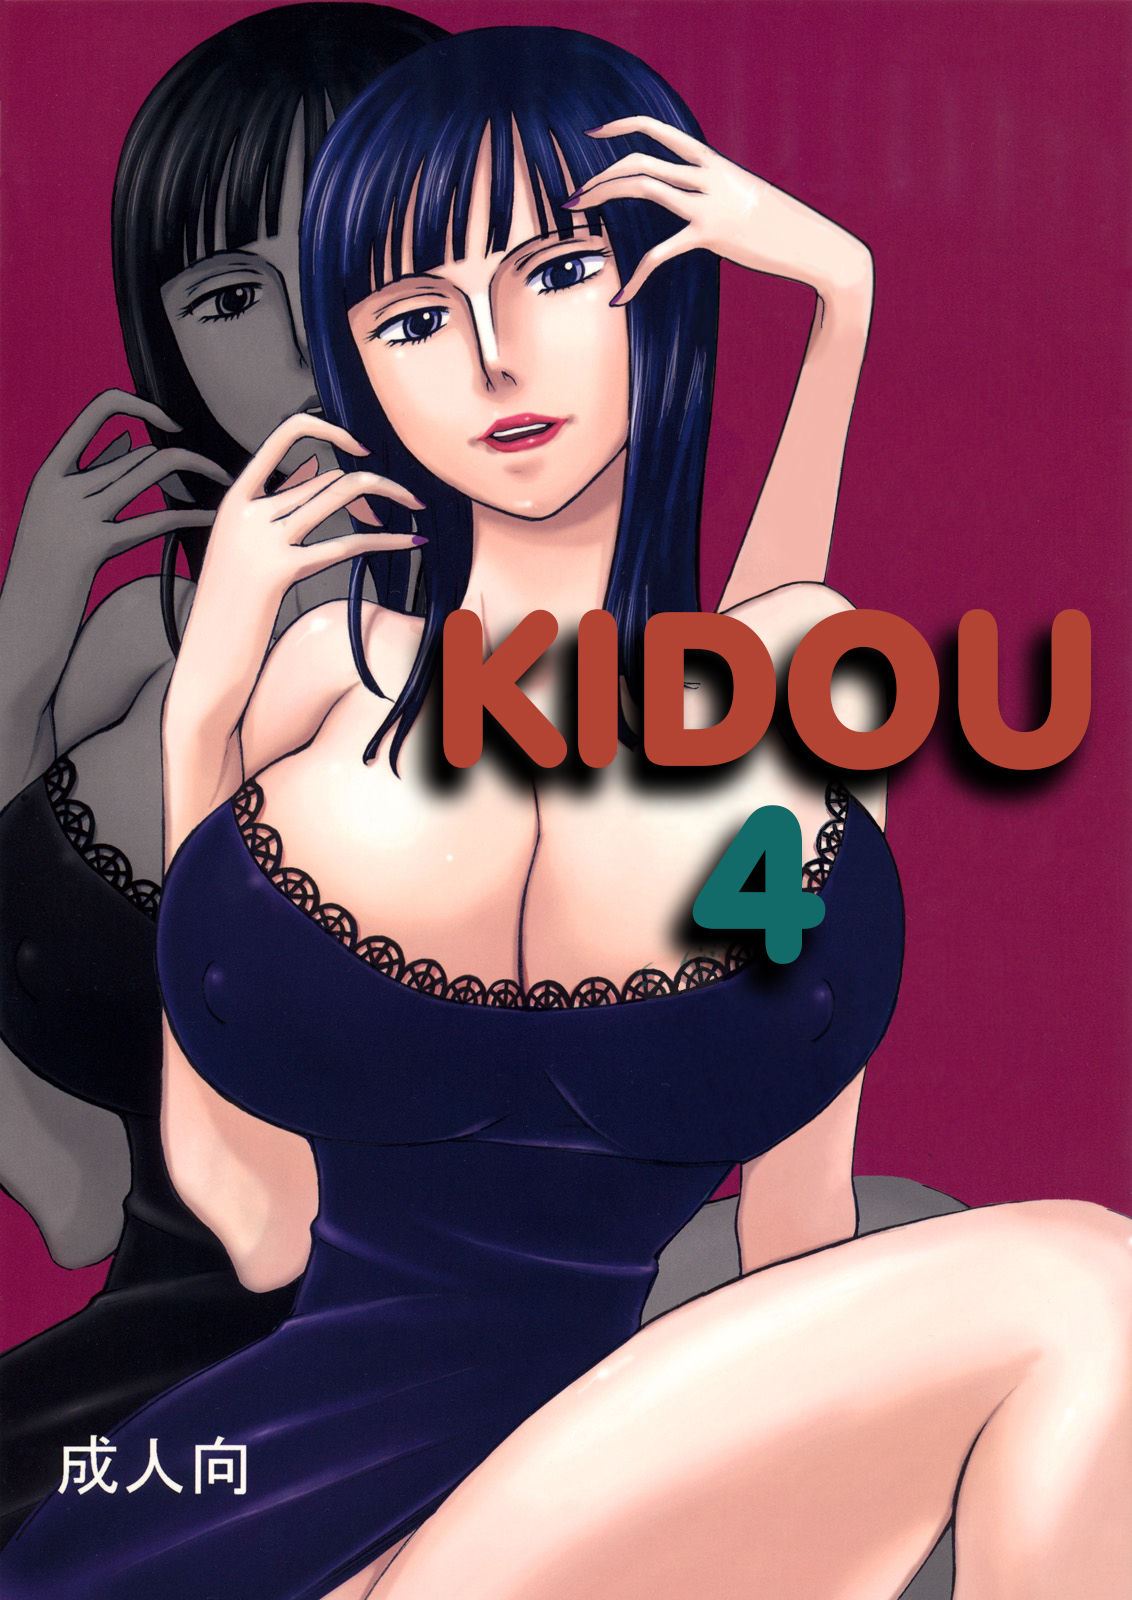 C73 Oni 69Dan Hagakure Bushi Toba Juumei Kidou Yon Kidou 4 One Piece English EHCOVE 00